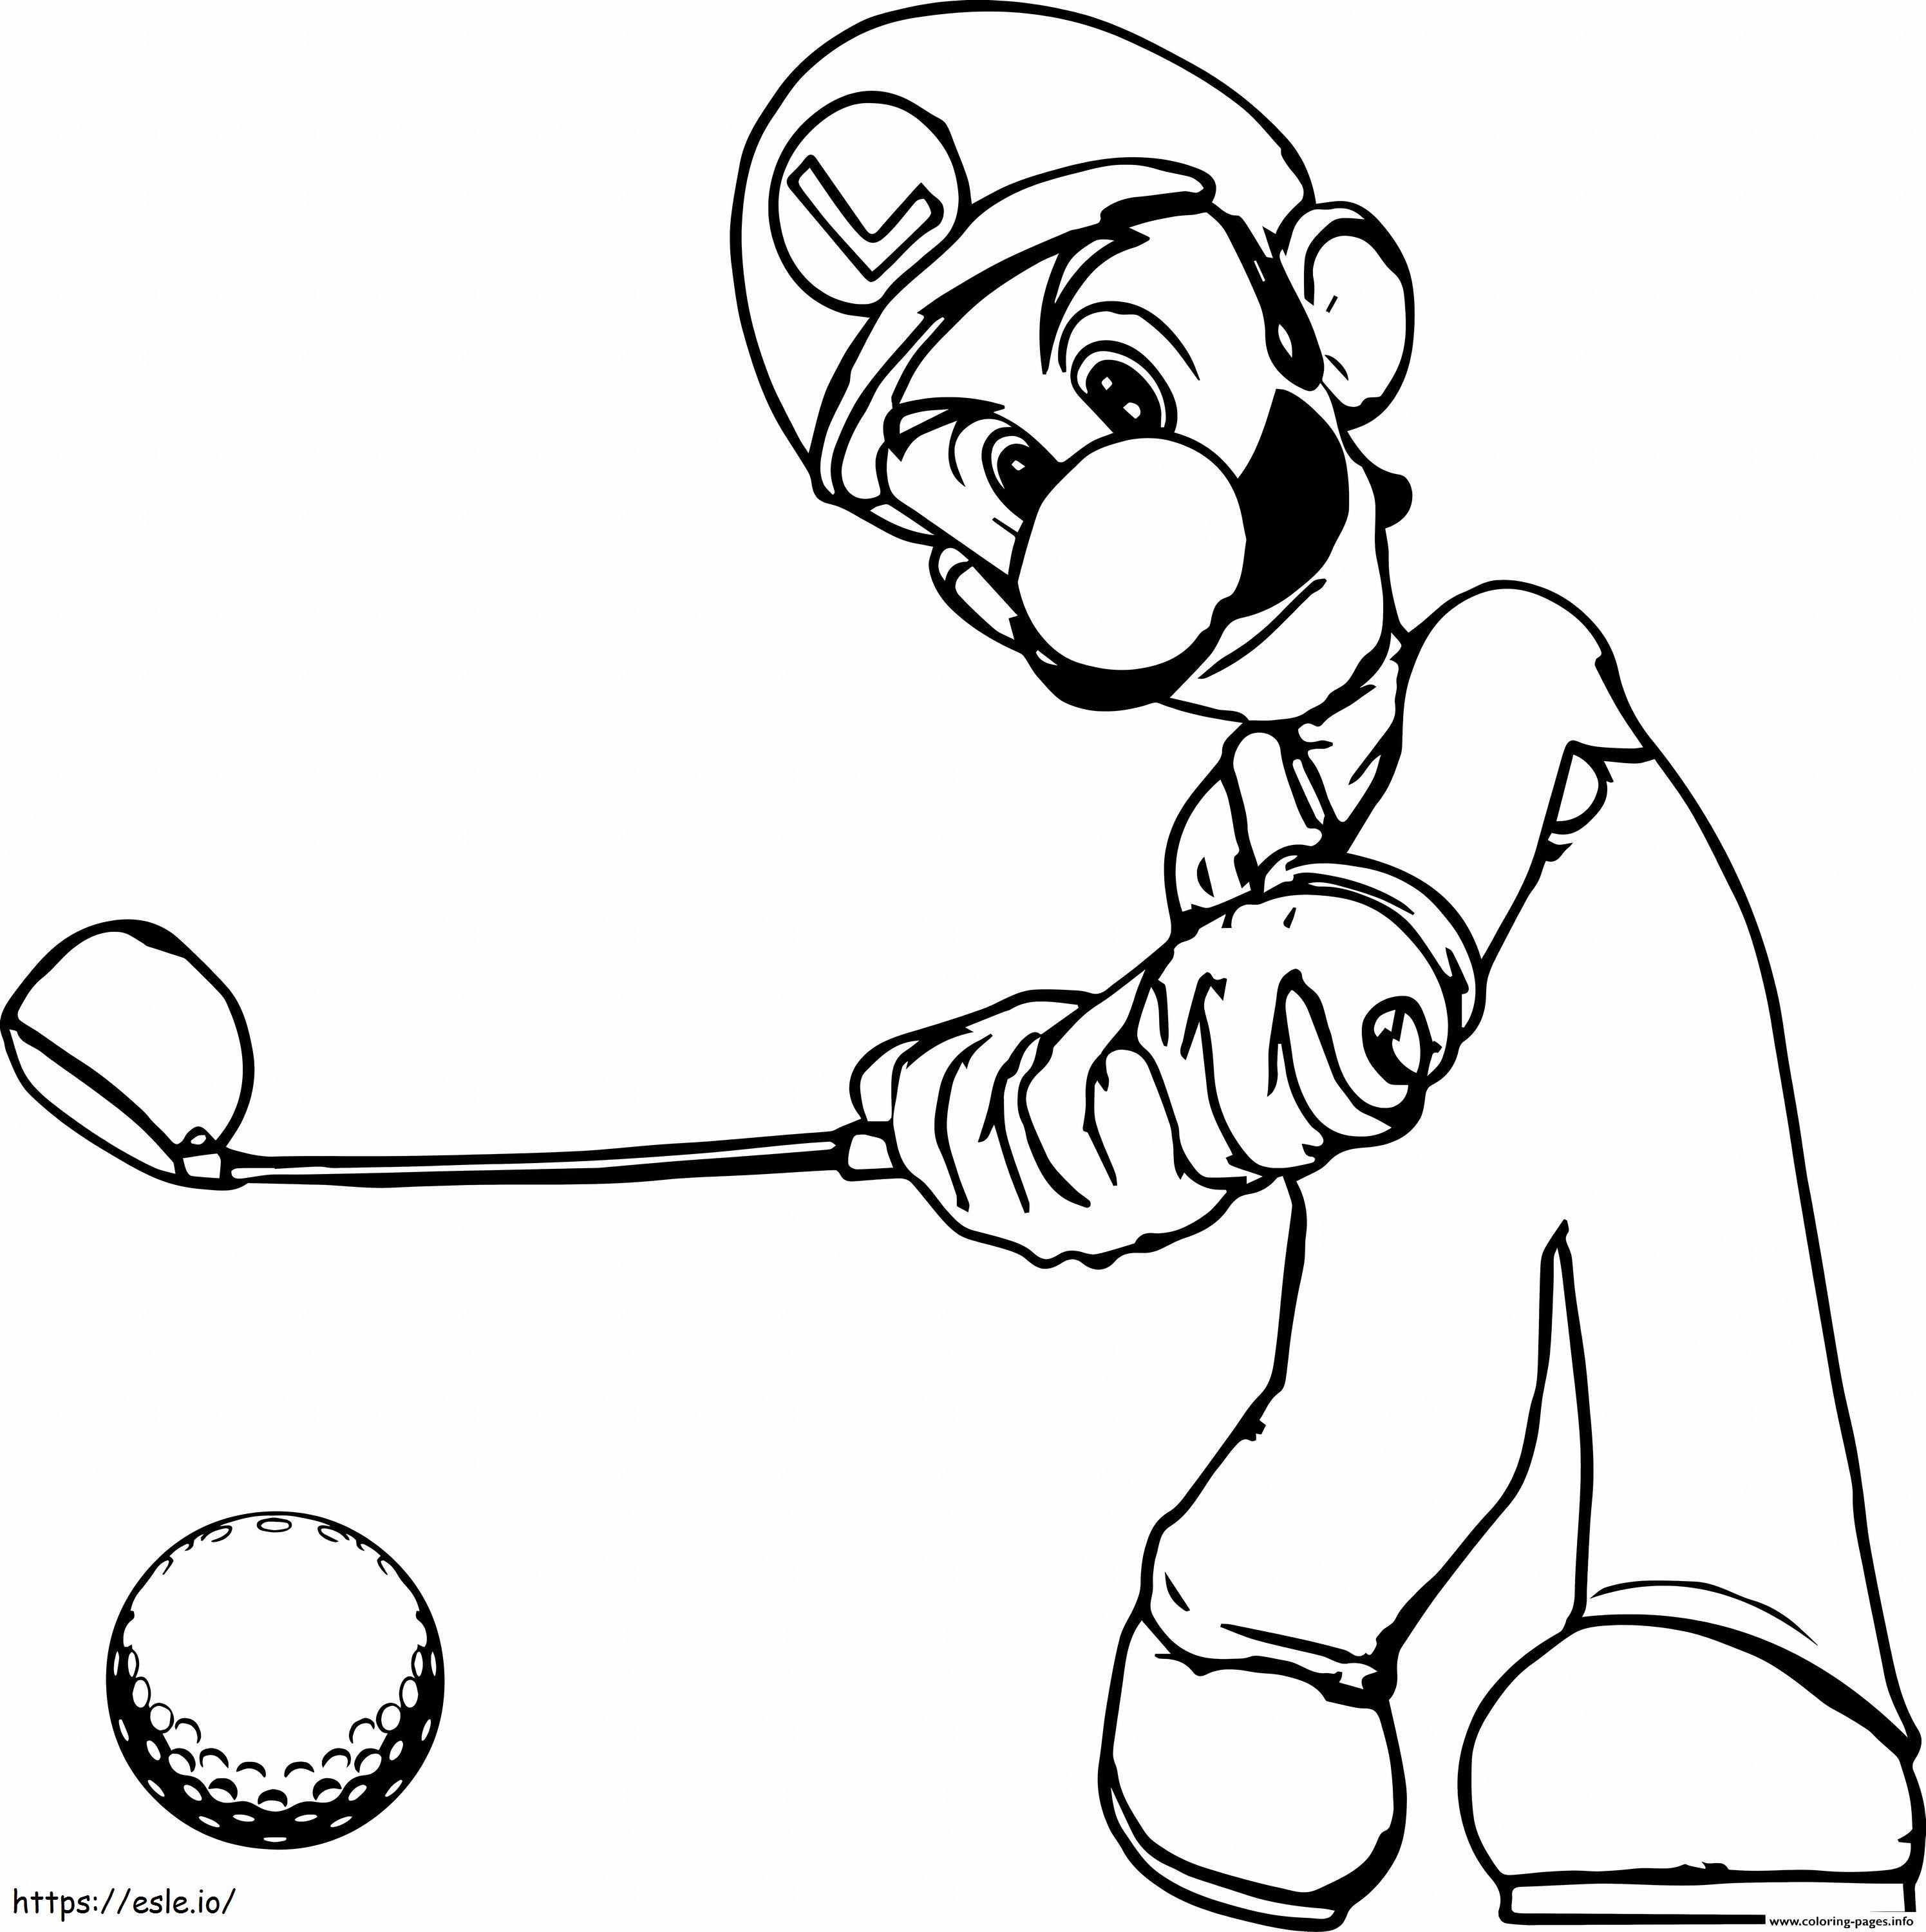 Luigi golft kleurplaat kleurplaat